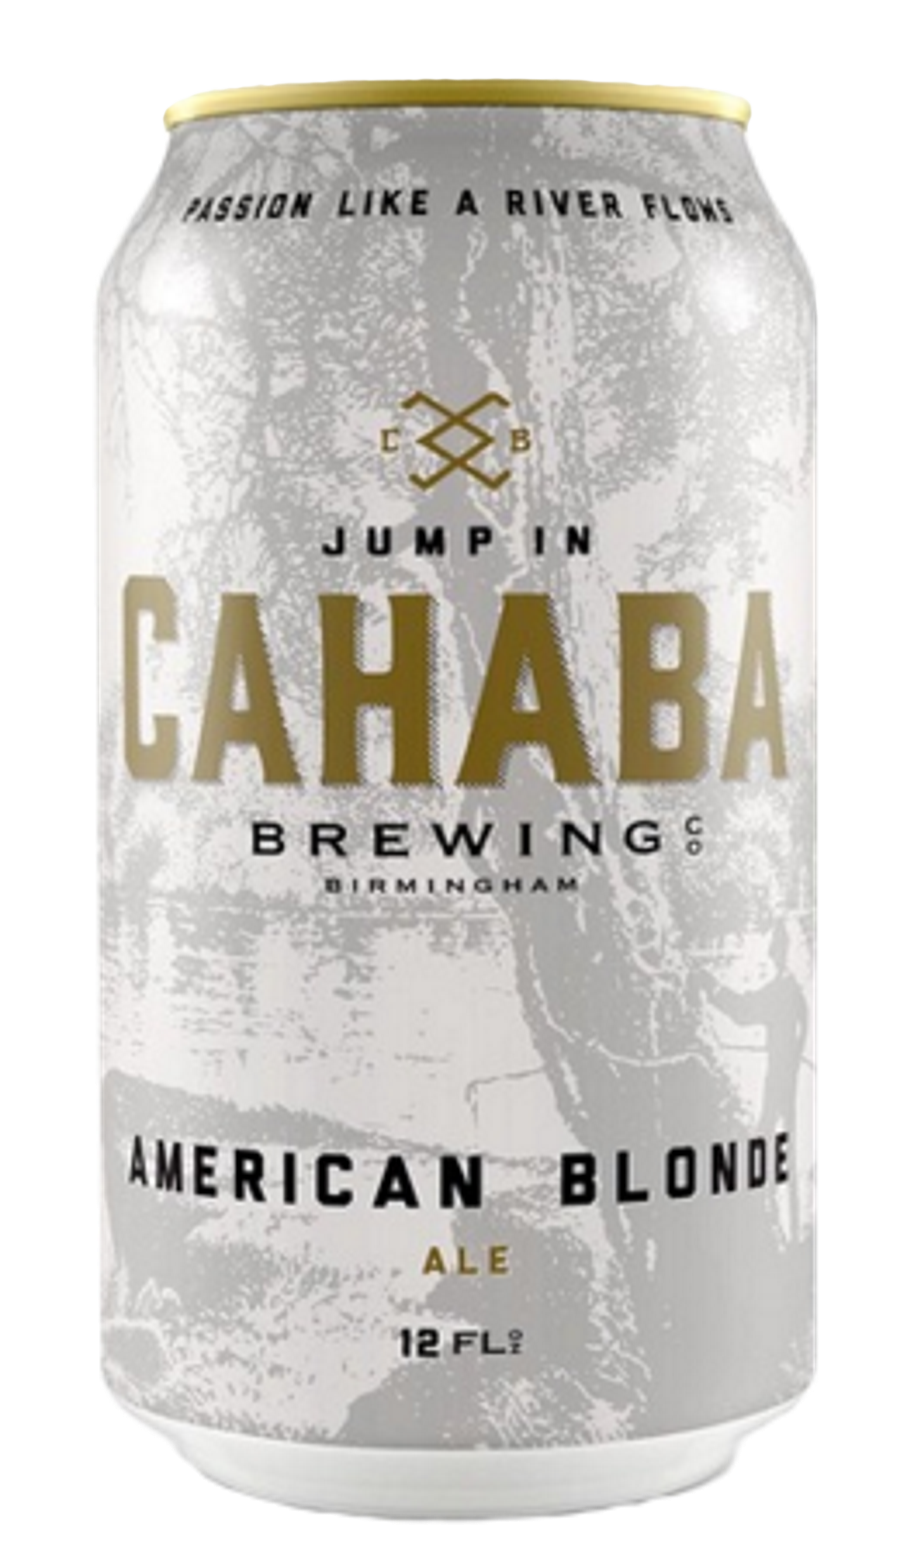 Produktbild von Cahaba Brewing - American Blonde